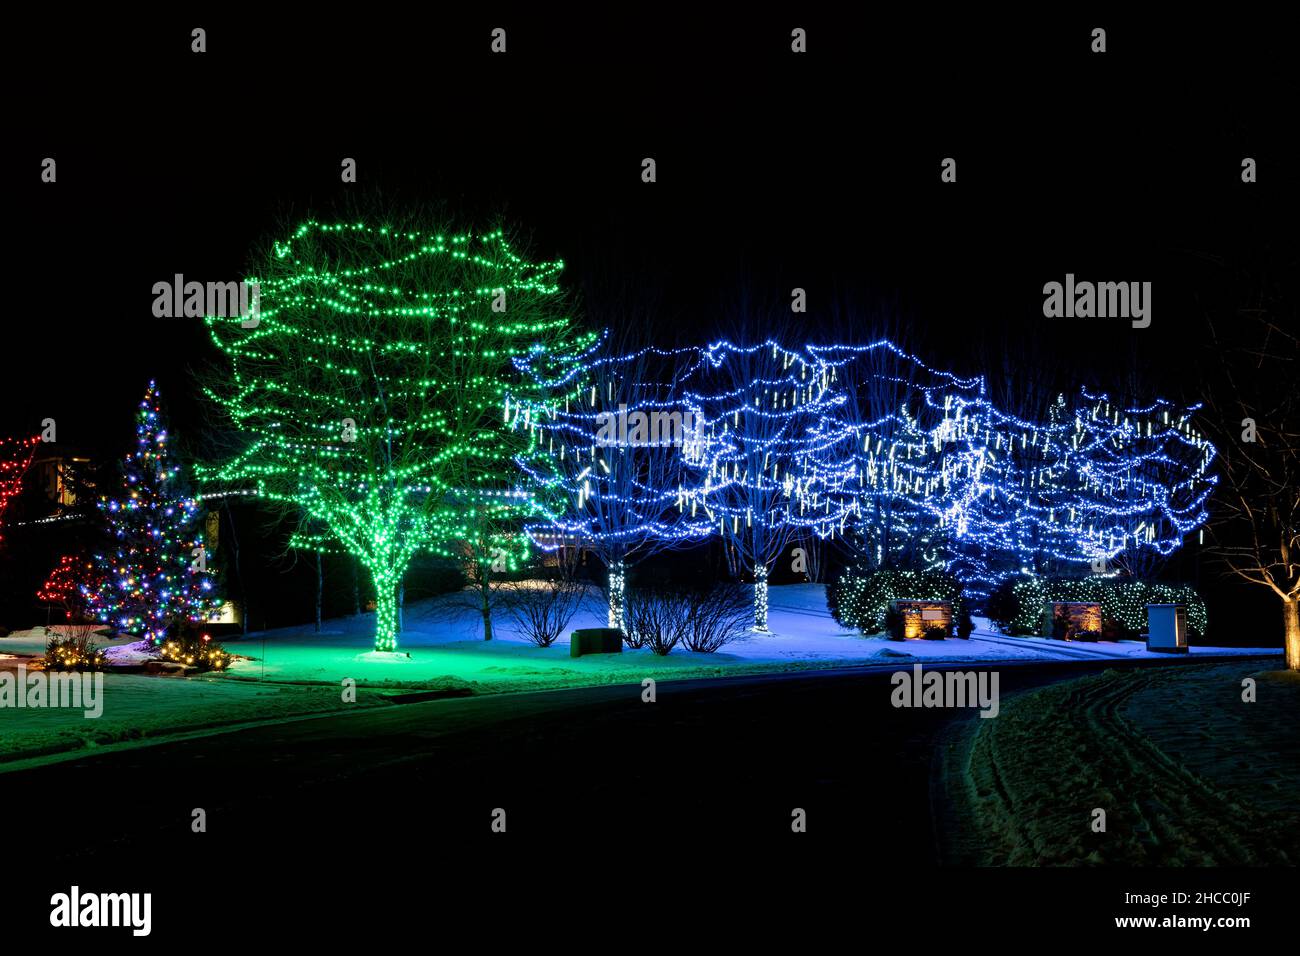 arbres illuminés de lumières de vacances colorées le long de la rue résidentielle Banque D'Images